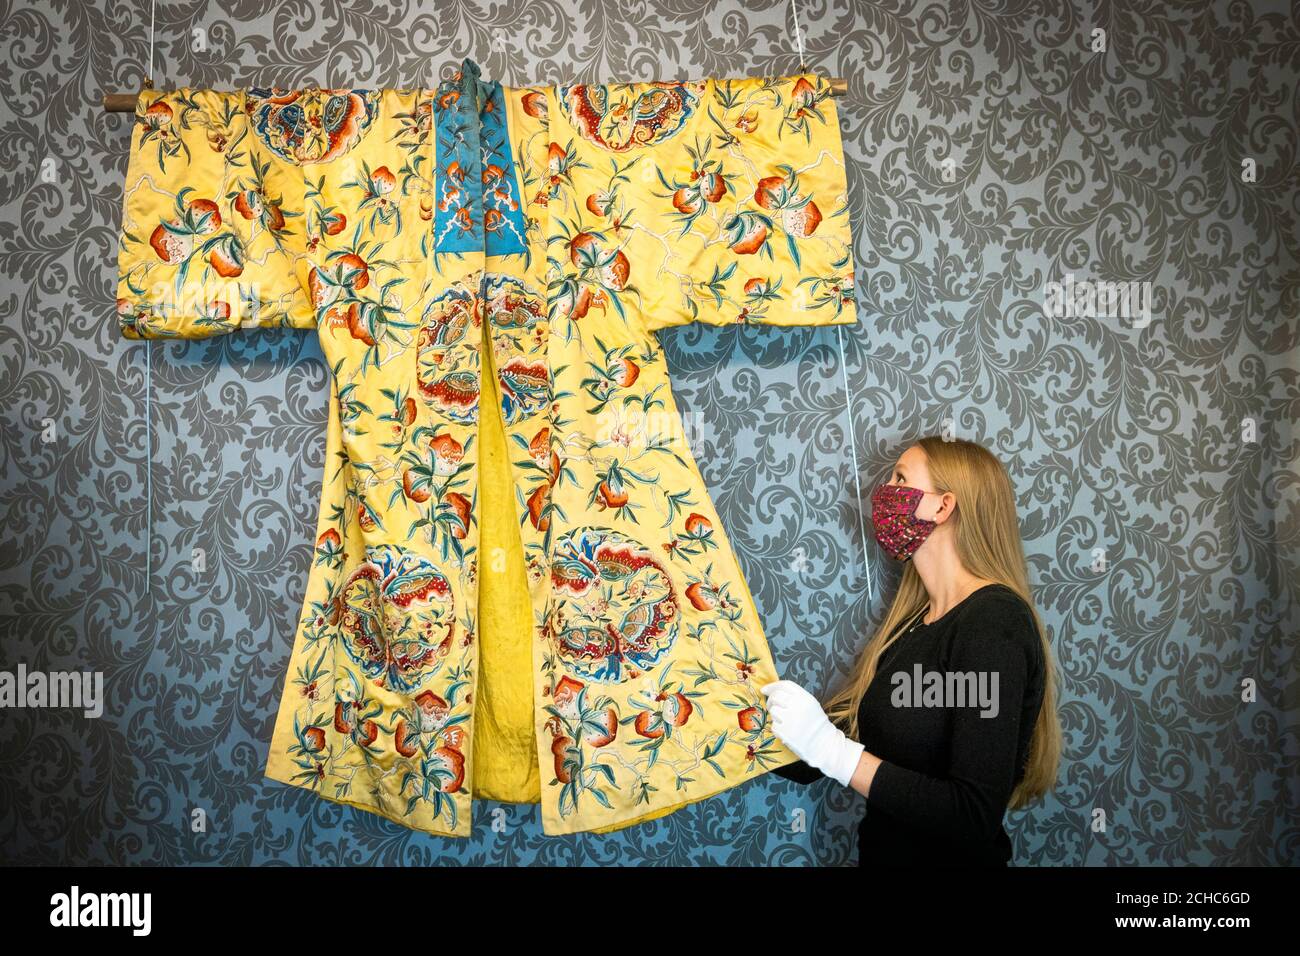 Romy Clark, de Bonhams Edinburgh, présente une robe de soie chinoise brodée Qing Dynasty (environ 800 £ à 1,200 £) lors d'un appel photo pour la prochaine vente Home and Interiors, et la vente Sporting and Wildlife, à Bonhams, Édimbourg, le 23 septembre 2020. Banque D'Images